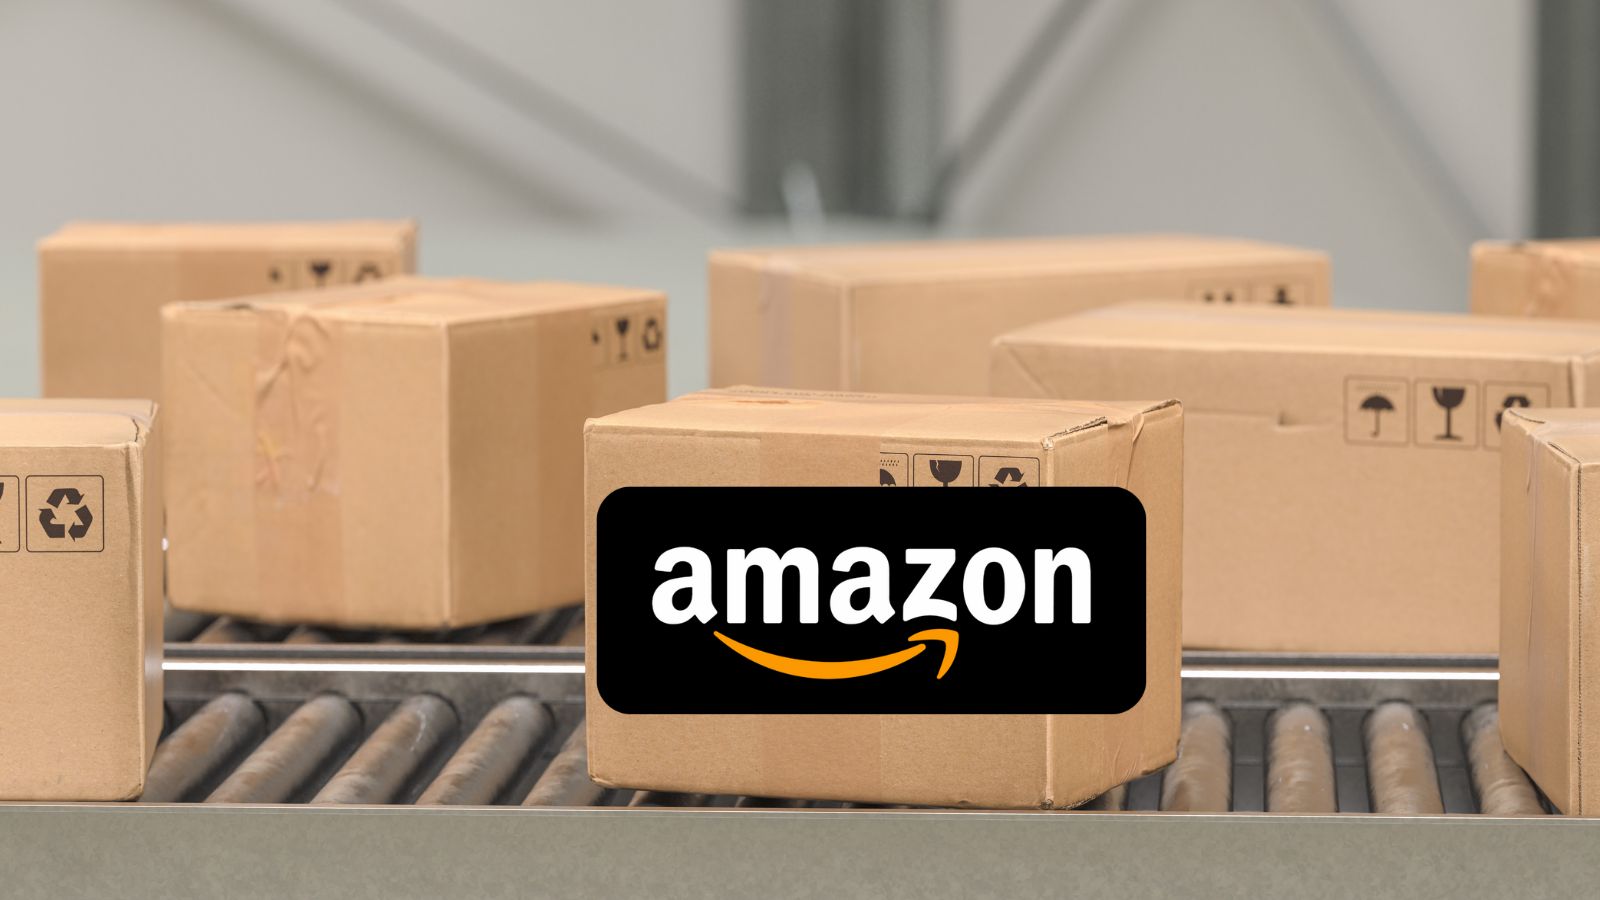 Amazon è ASSURDA, oggi regala prodotti e CODICI sconto